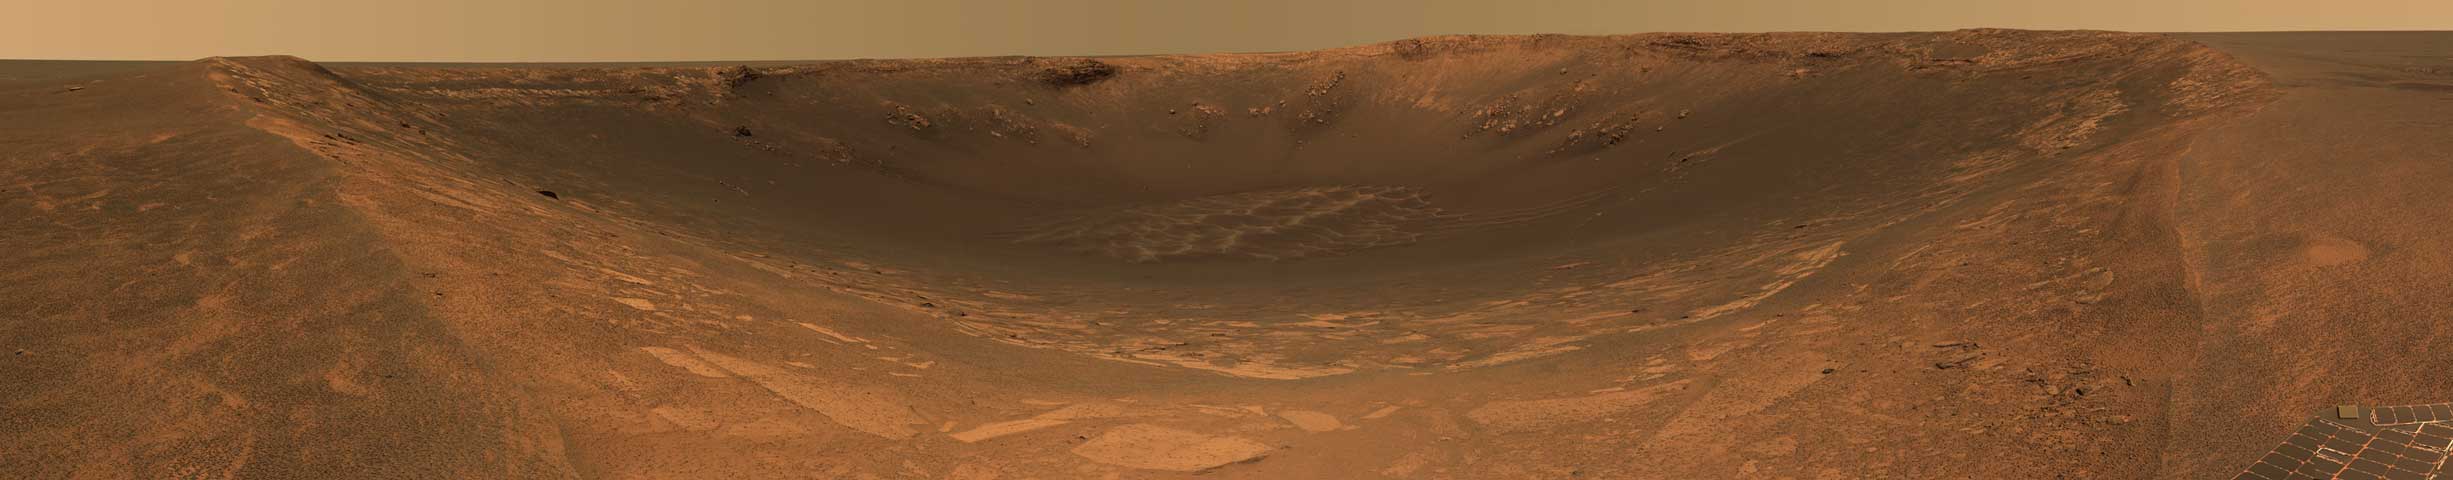 Le cratère Endurance sur Mars